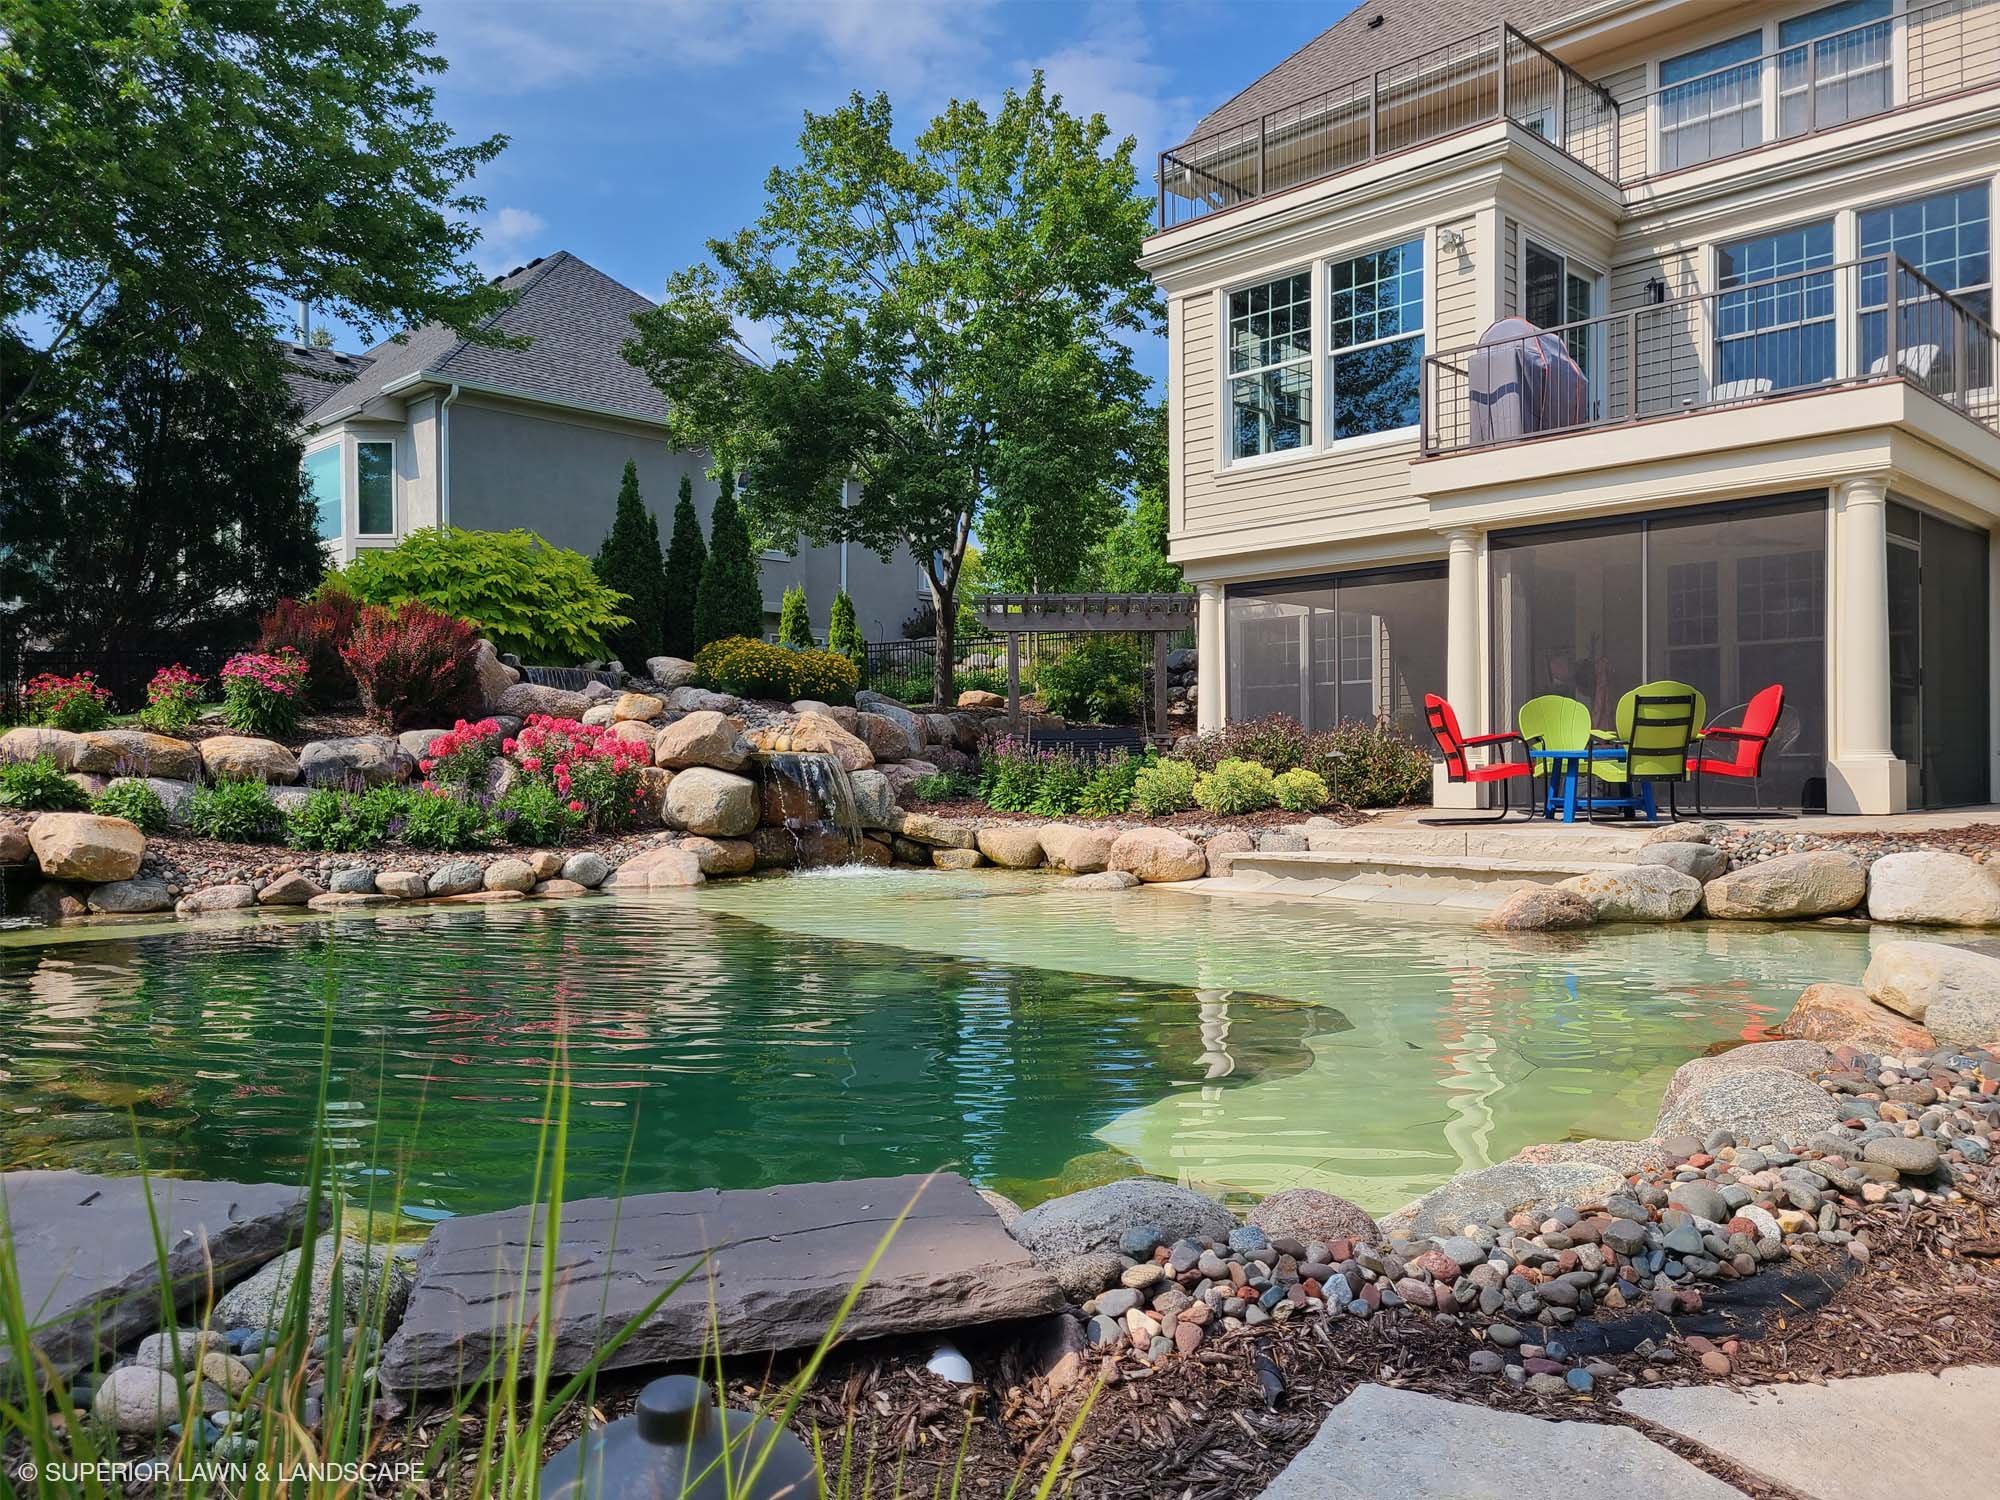 superior-lawn-landscape-outdoor-living-031-back-yard-boulder-pool.jpg